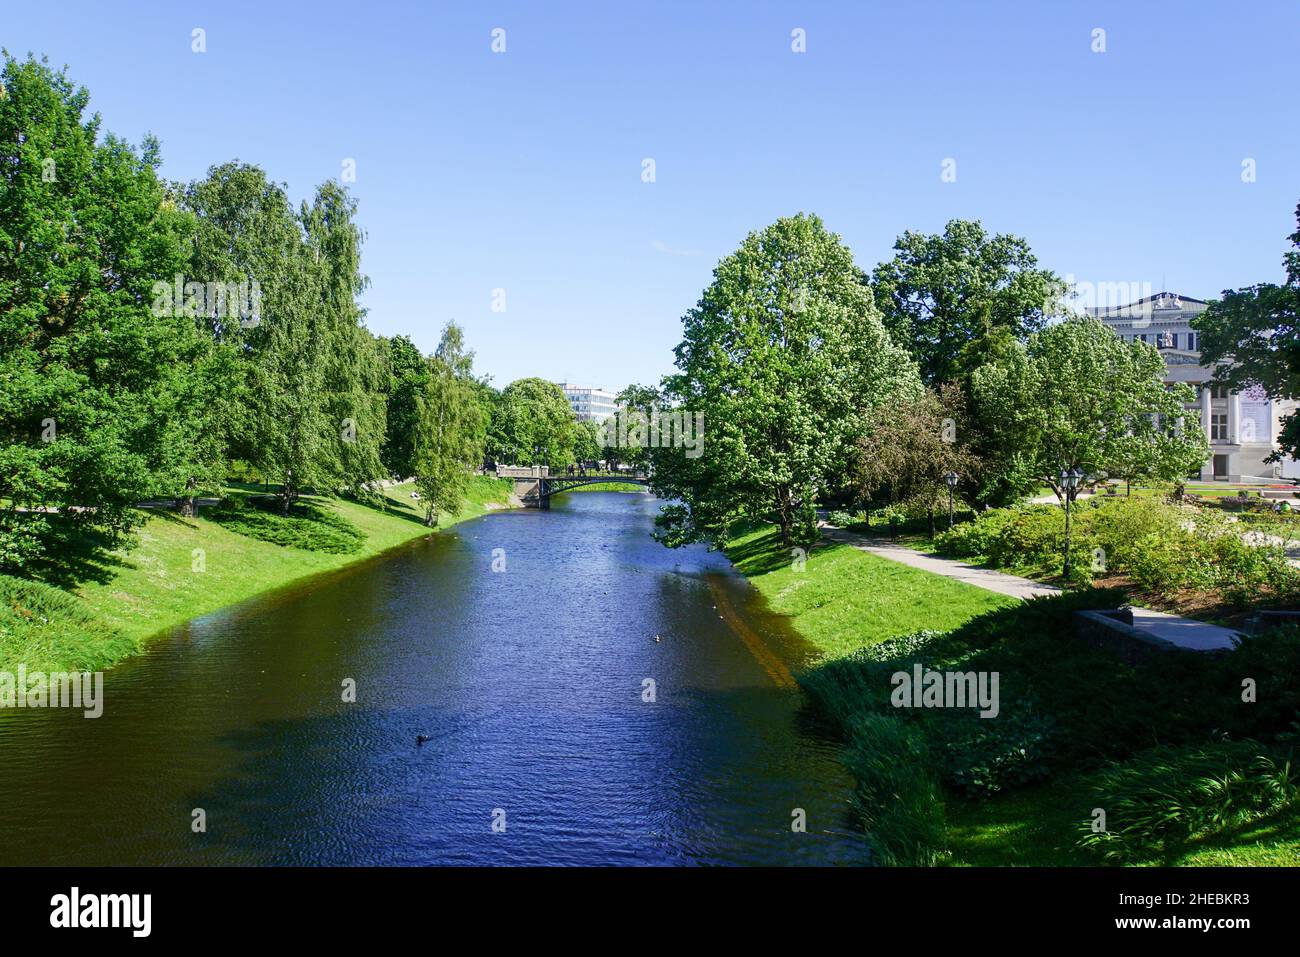 The Canal in Riga, Latvia Stock Photo